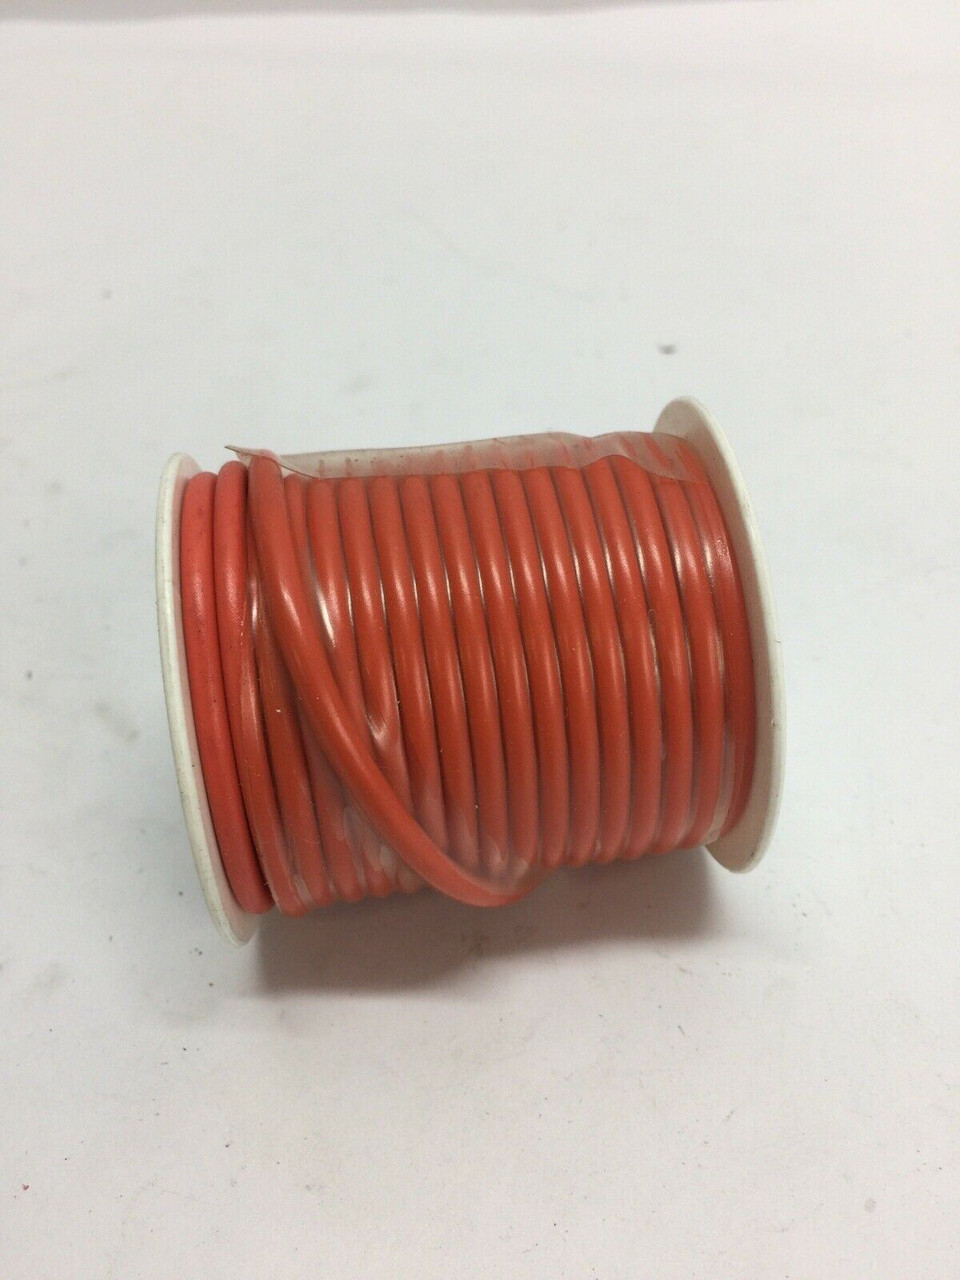 General Purpose Thermo Plastic Wire 89-7012 Grote Orange 25 FT 14 GA